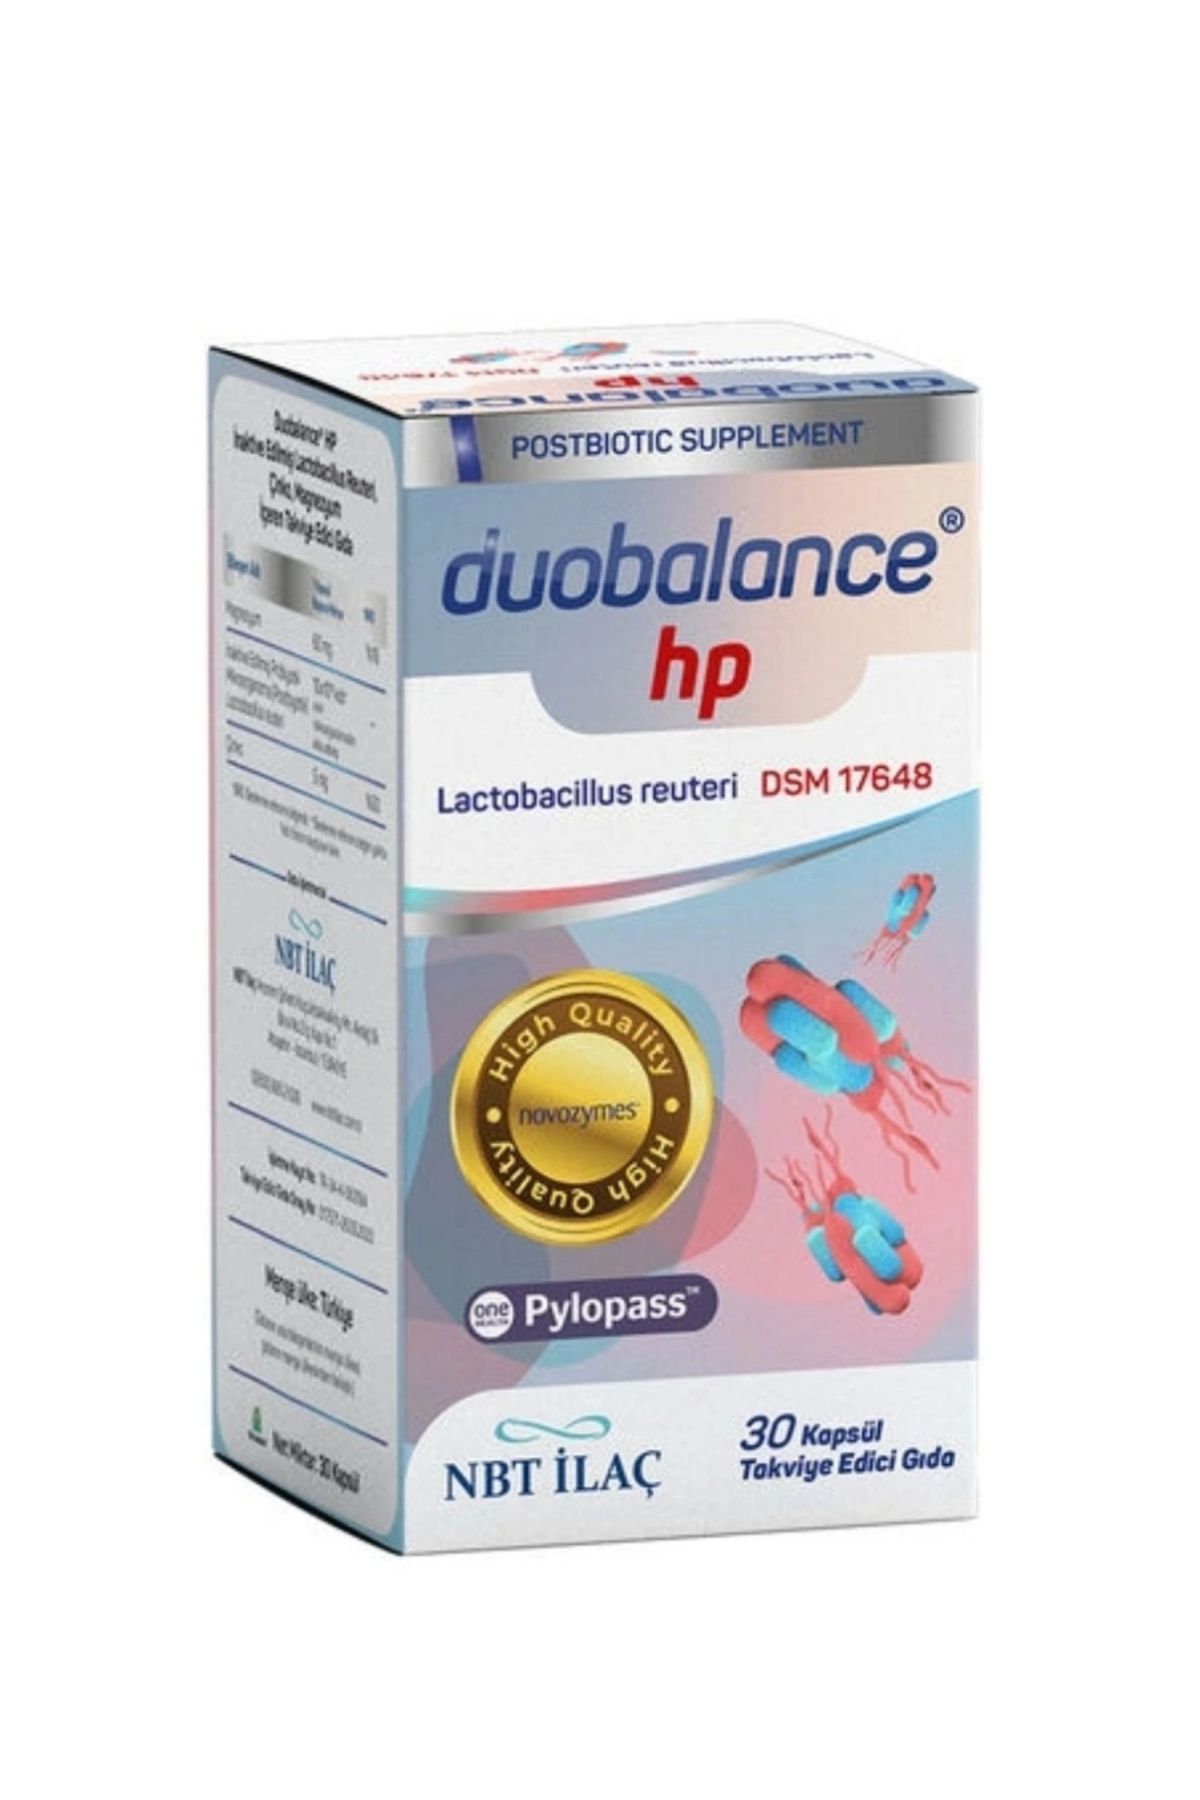 Duobalance ® hp 30 Kapsül Takviye Edici Gıda 8680645530944